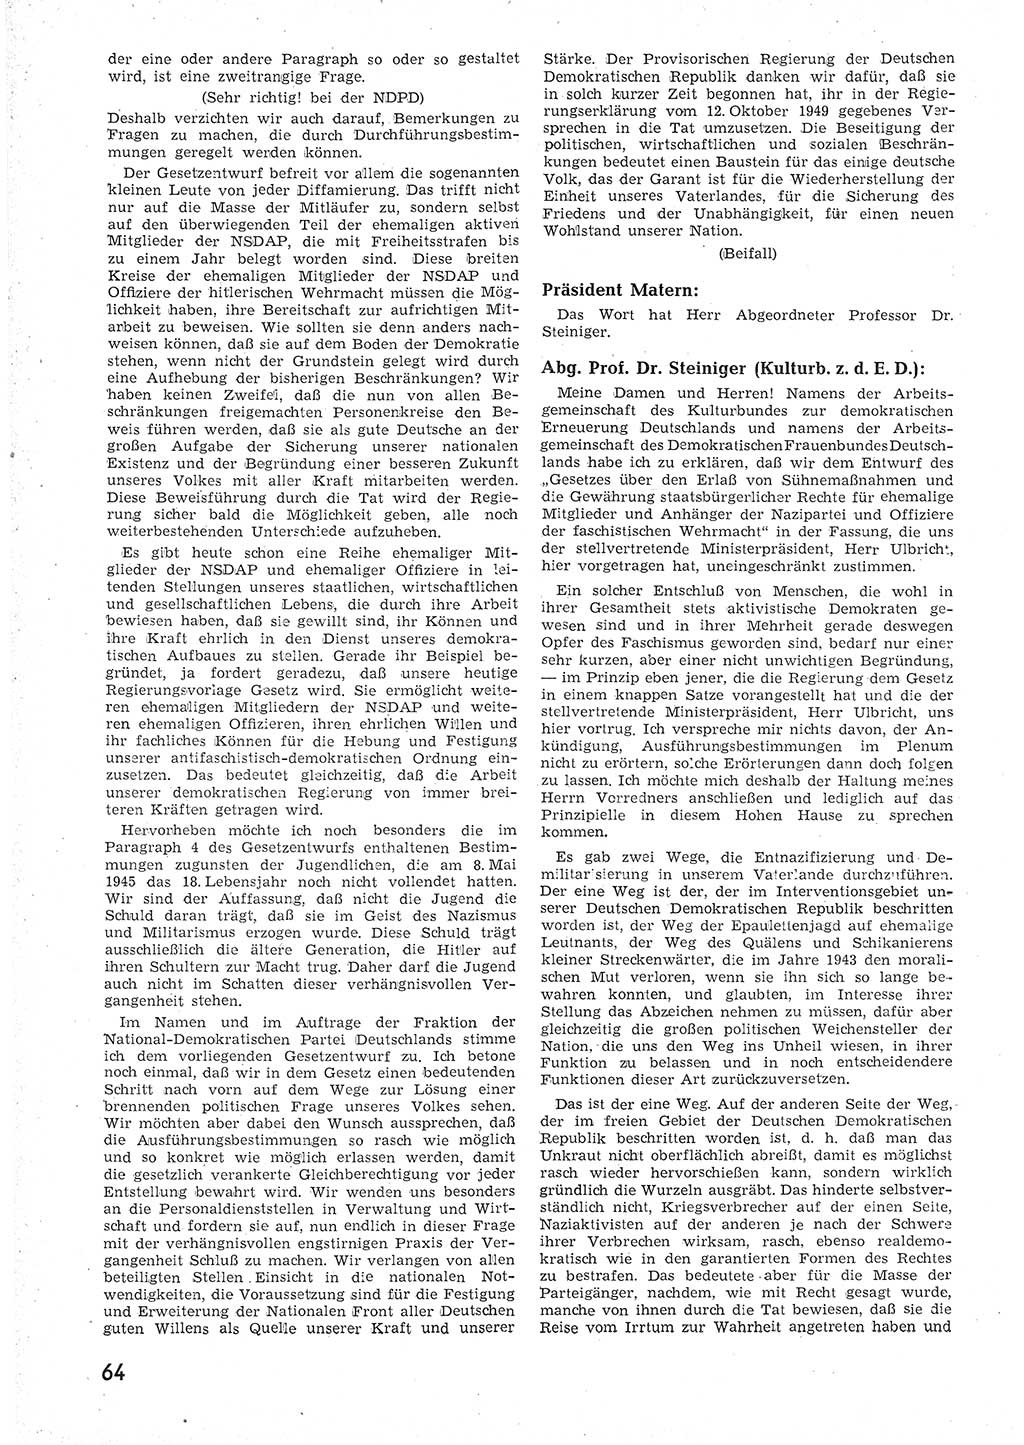 Provisorische Volkskammer (VK) der Deutschen Demokratischen Republik (DDR) 1949-1950, Dokument 76 (Prov. VK DDR 1949-1950, Dok. 76)